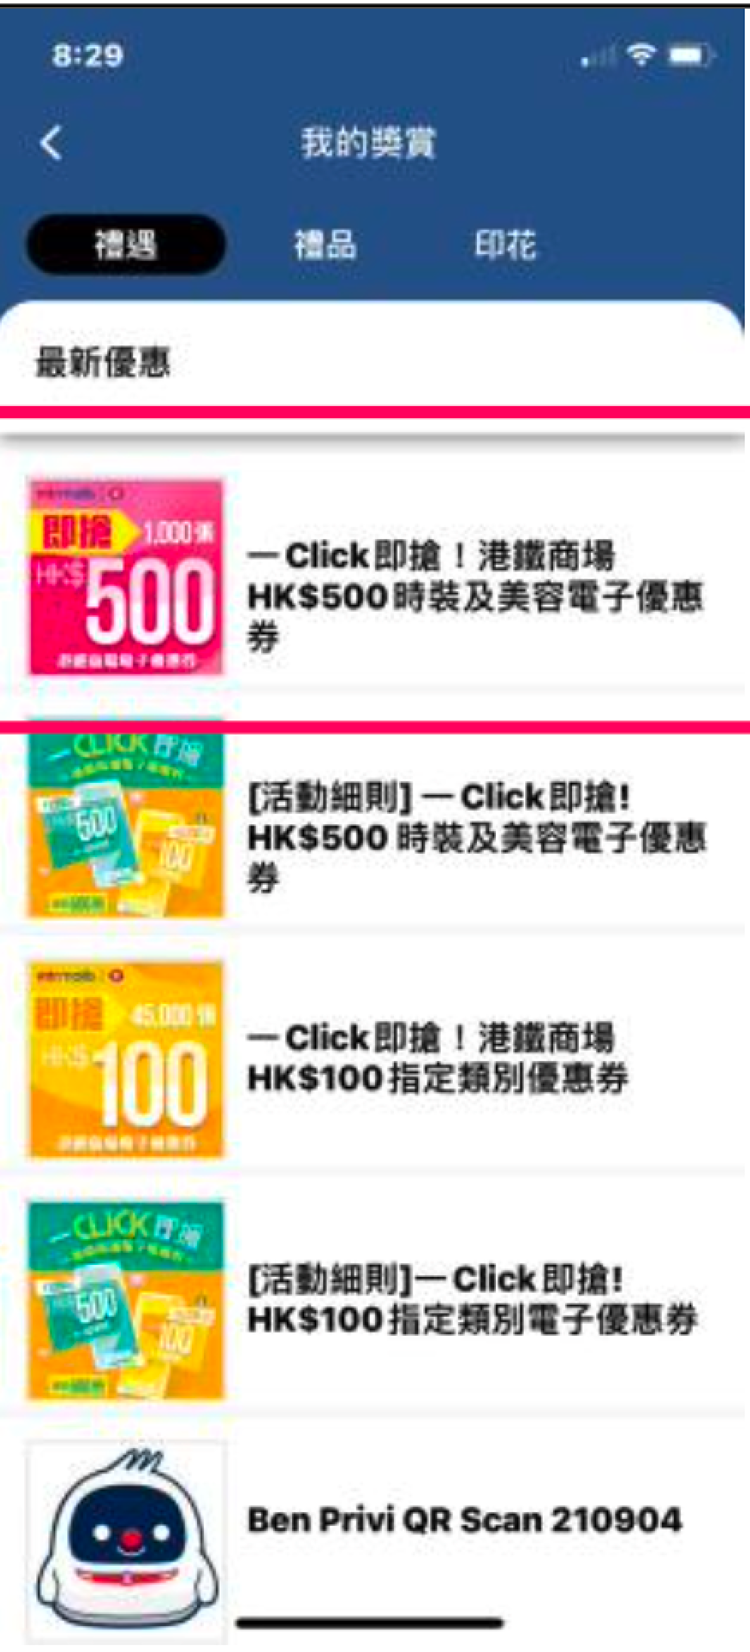 港鐵優惠, mtrmobile, 電子優惠券, 手機app, 每人最多獲800元回贈, 3個步驟搶優惠, HKBT, 香港財經時報